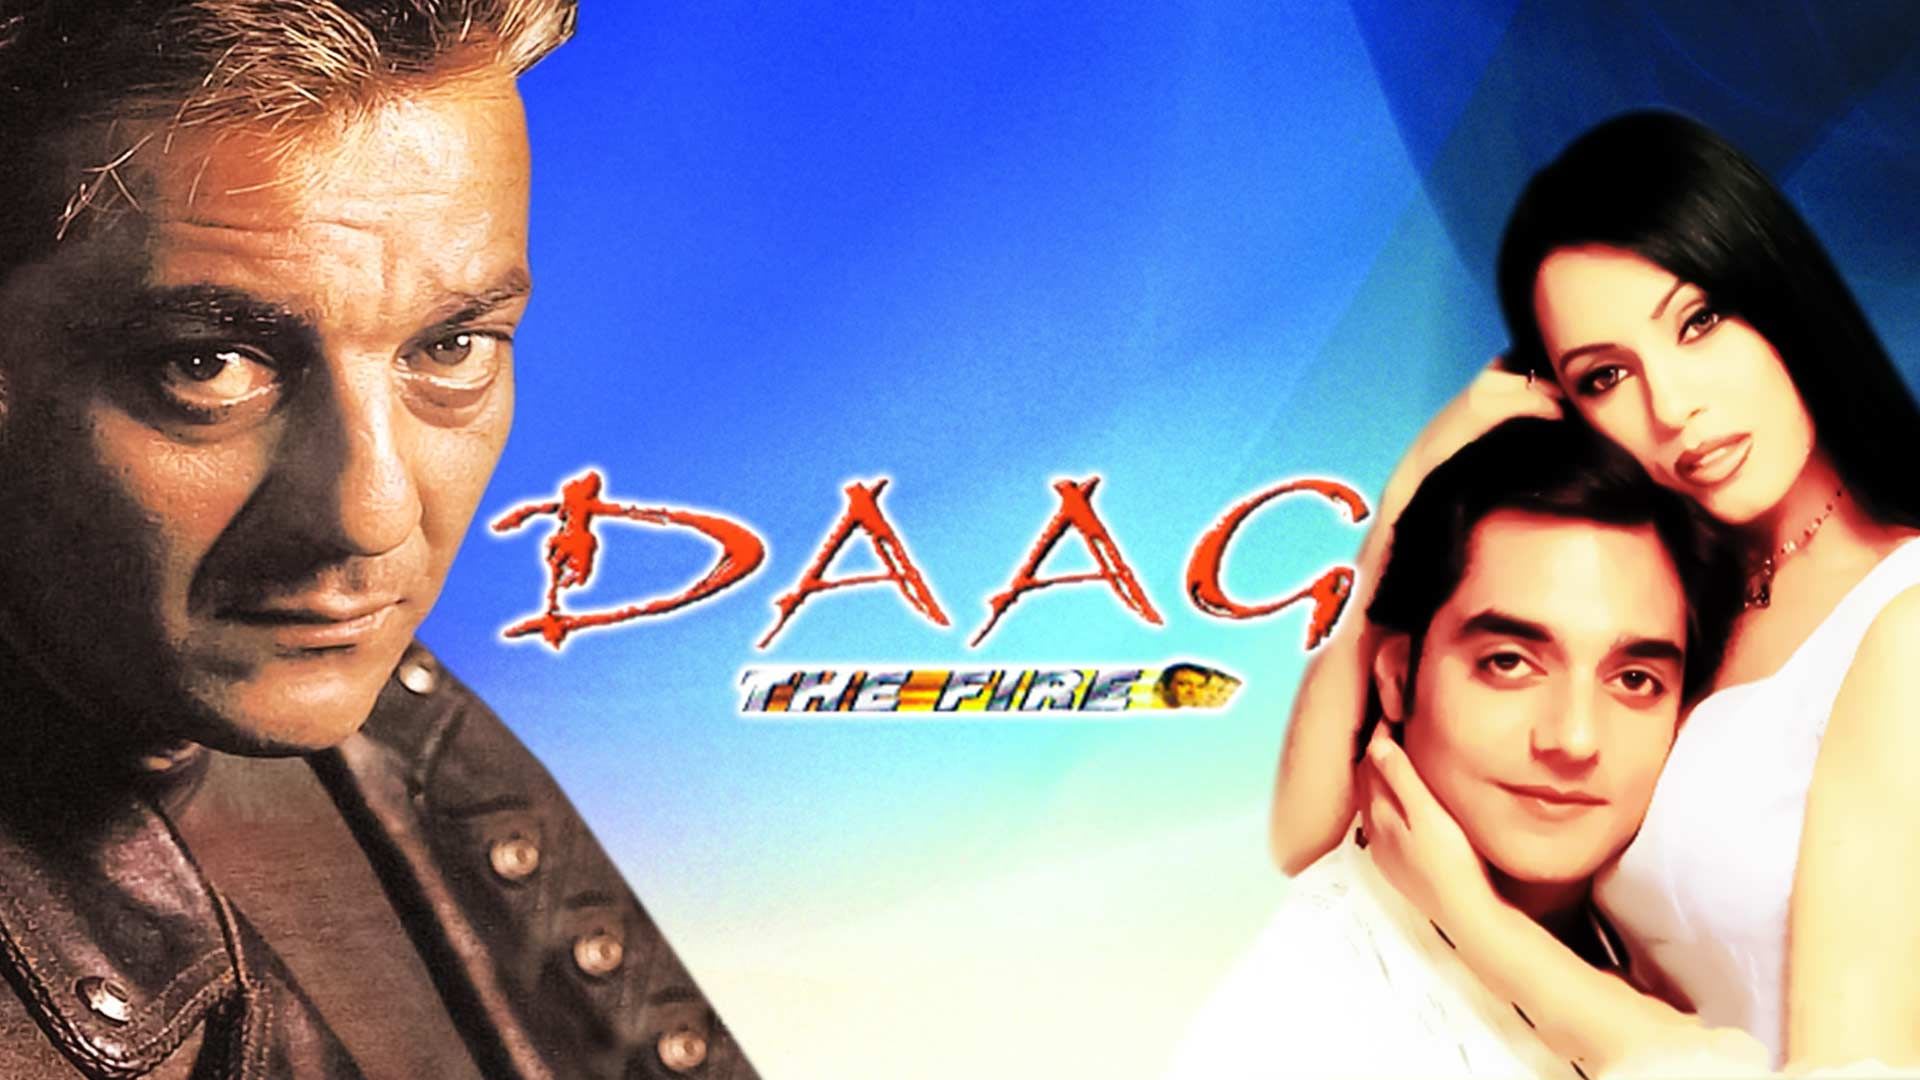 Daag - The Fire